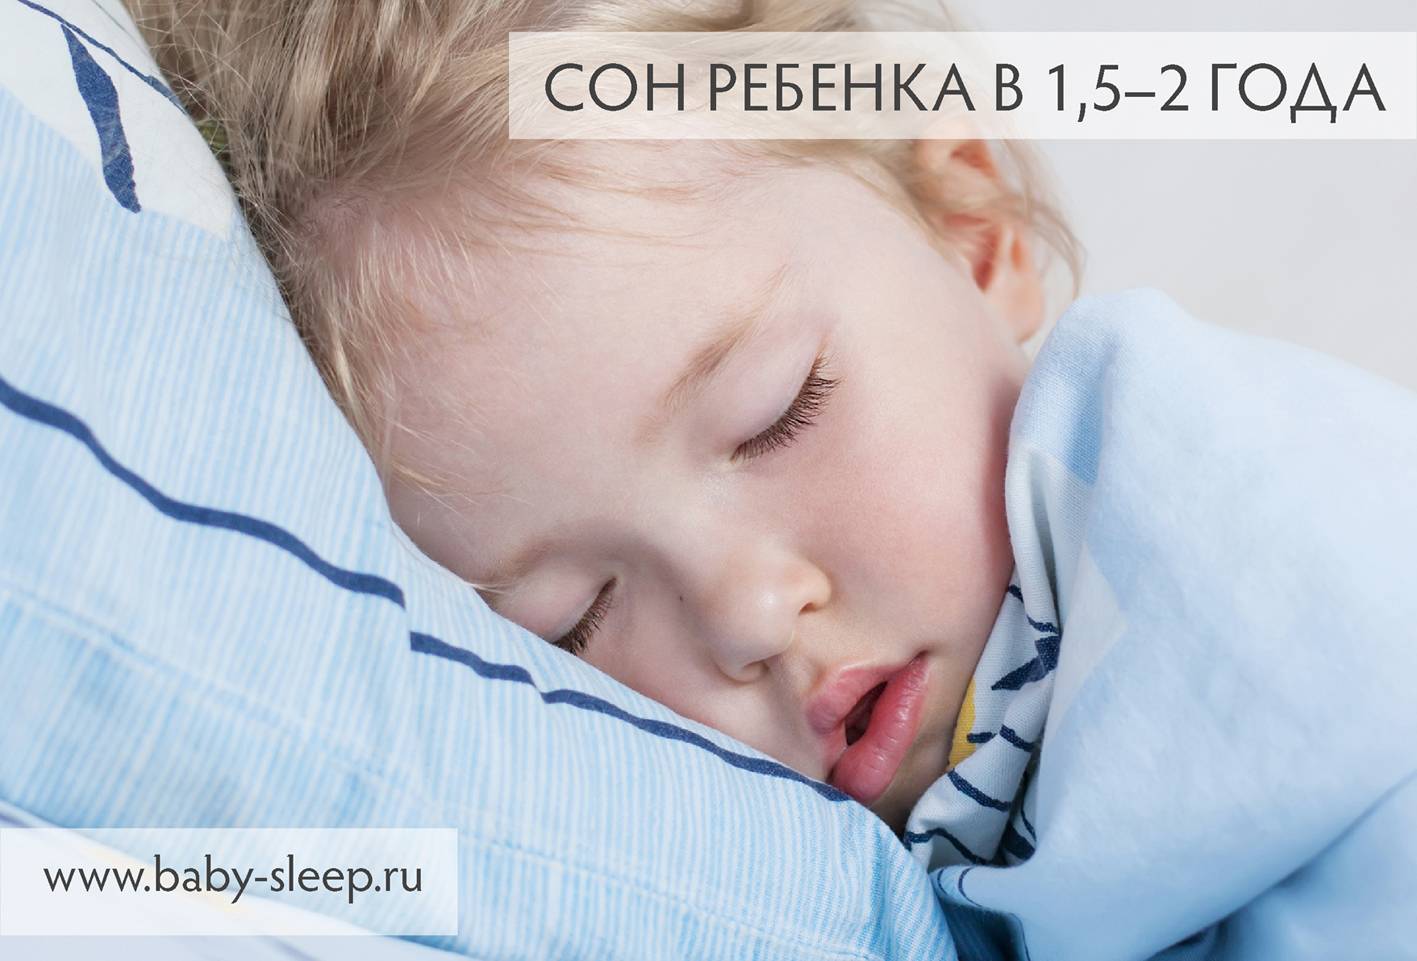 Не с той ножки встал: почему ребенок плачет после сна и что с этим делать?